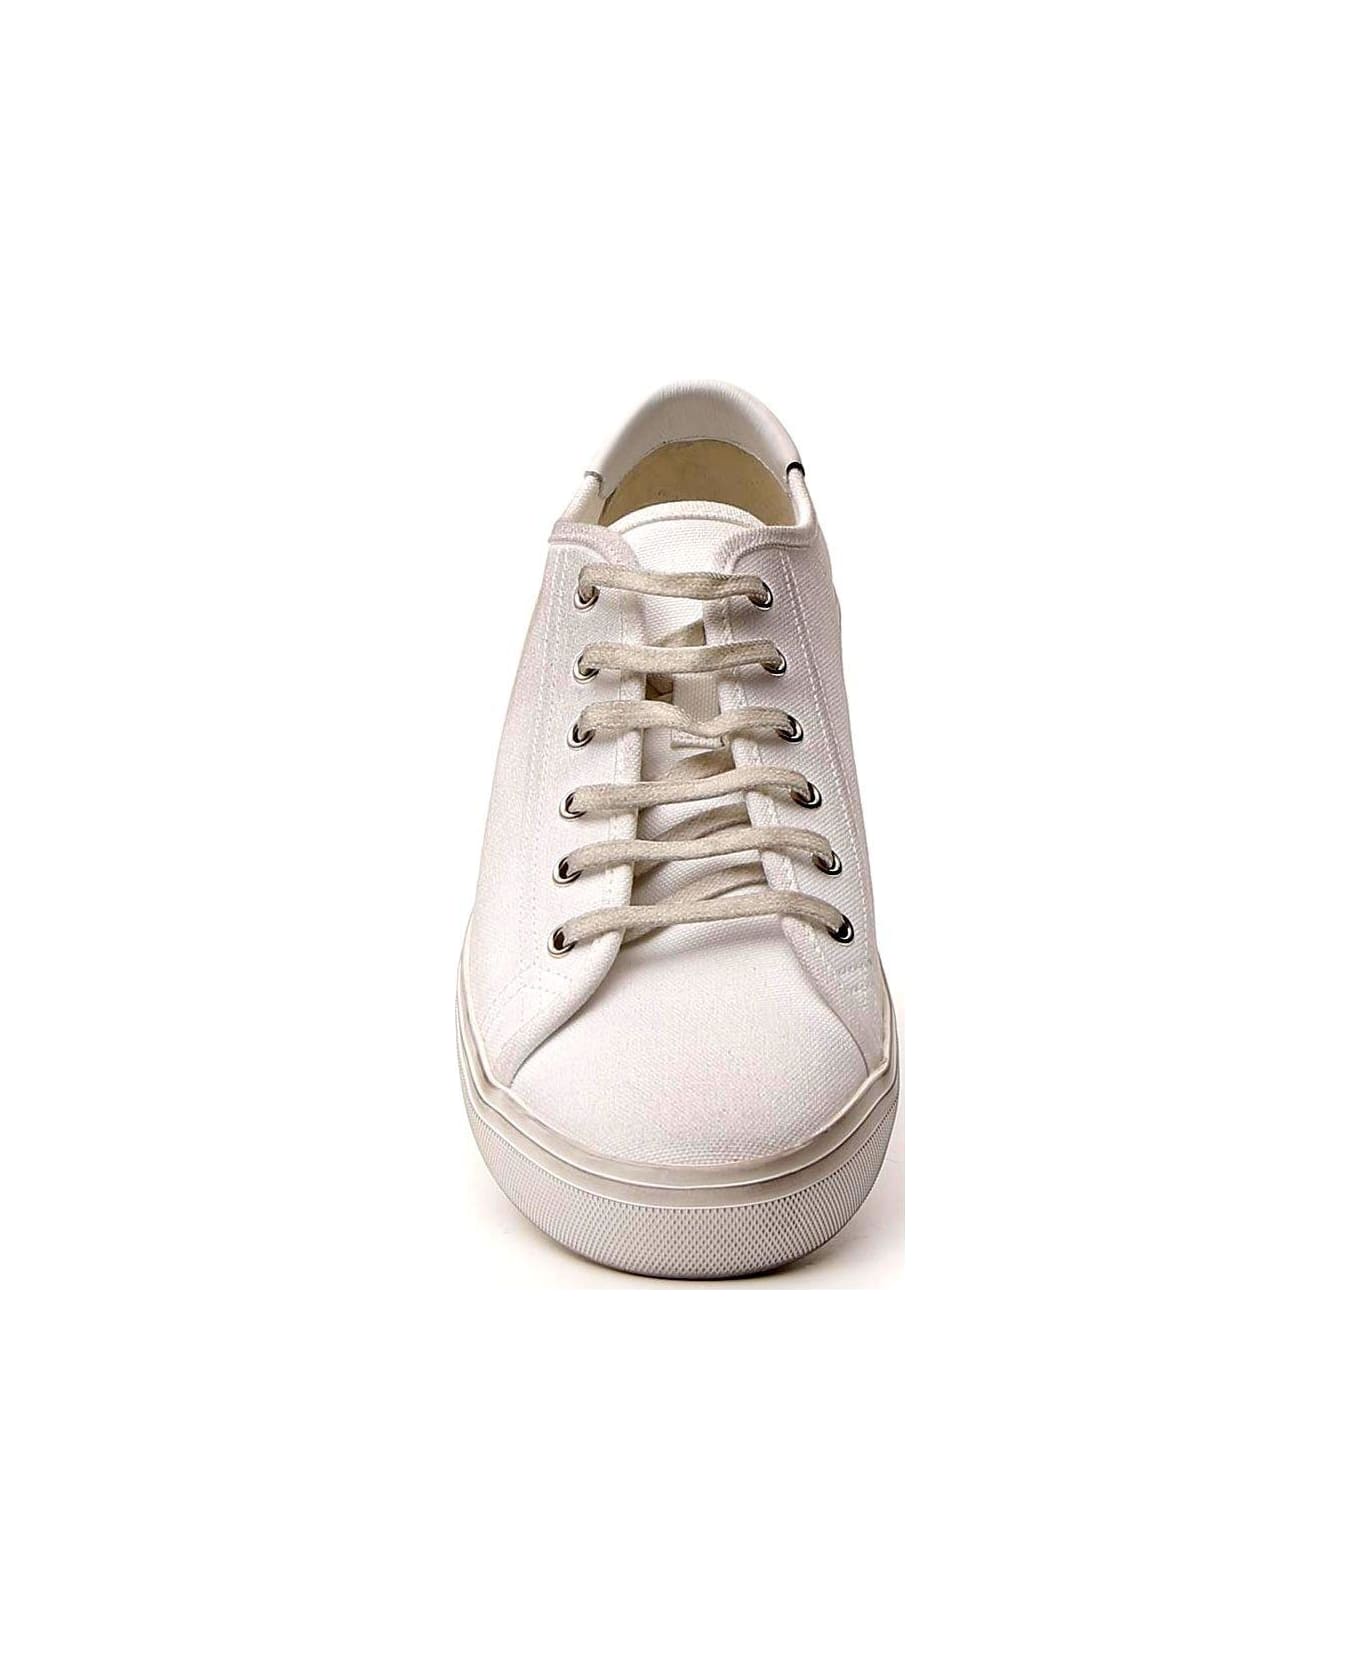 Saint Laurent Malibu Sneakers - Bianco